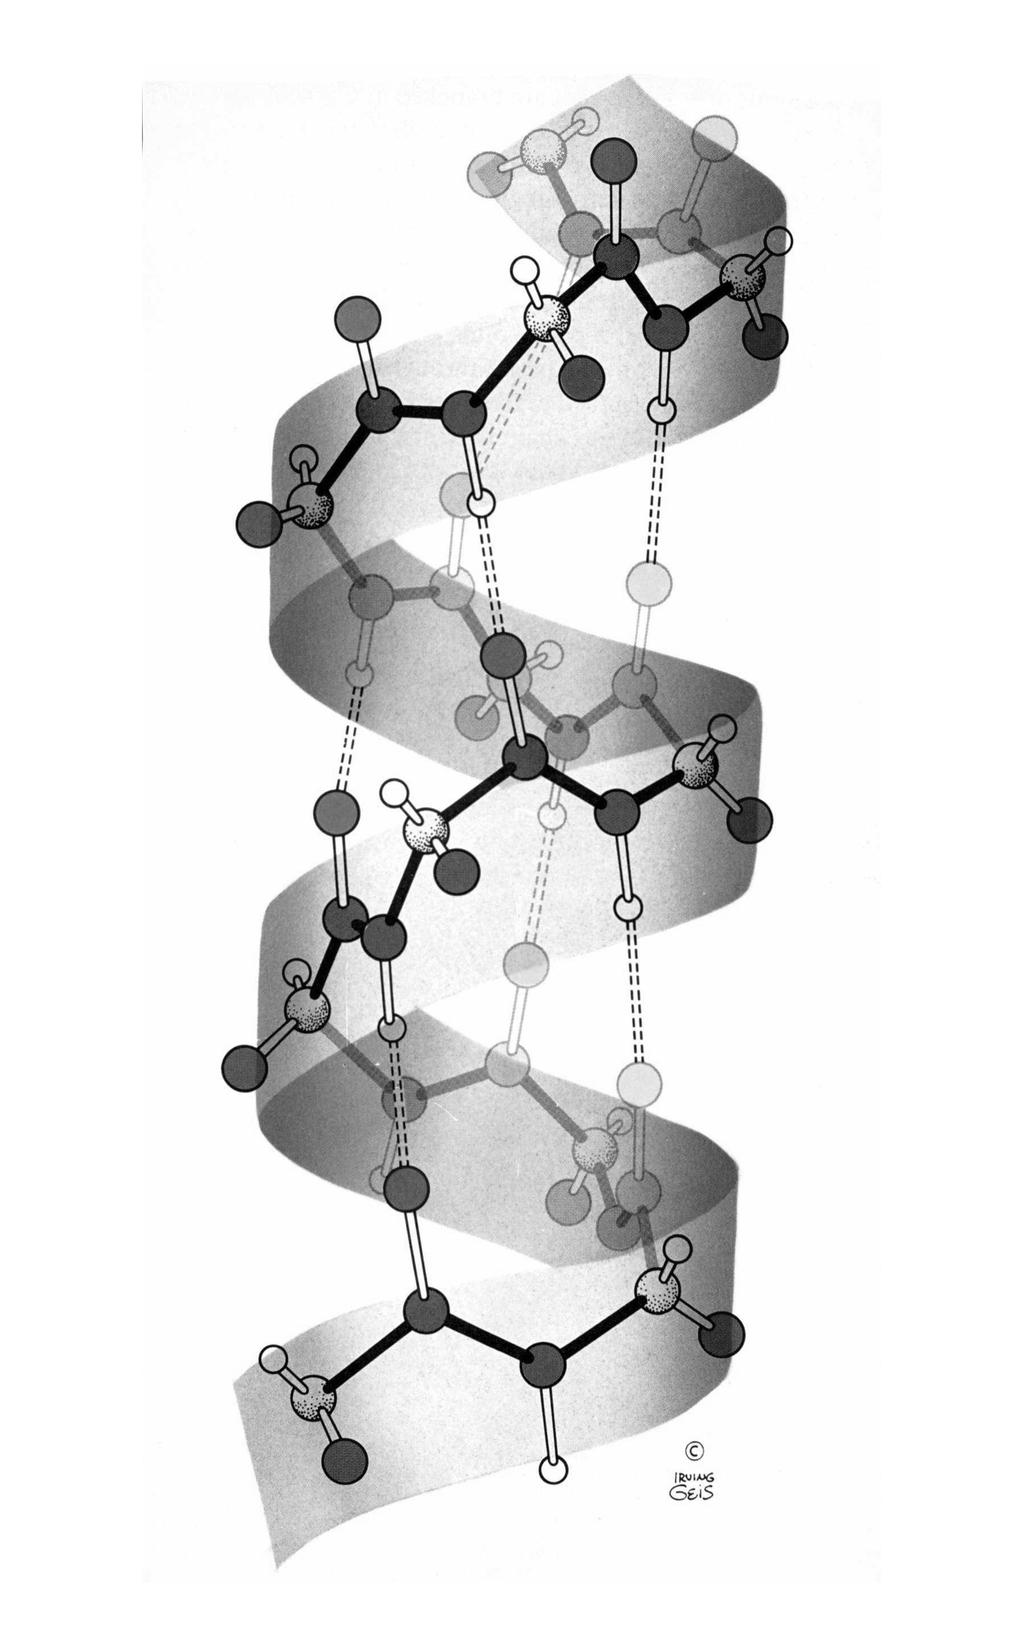 Structura α helix prezintă un moment de dipol, pentru că toate legăturile de hidrogen sunt orientate în aceeaşi direcţie şi sunt paralele cu axa structurii.